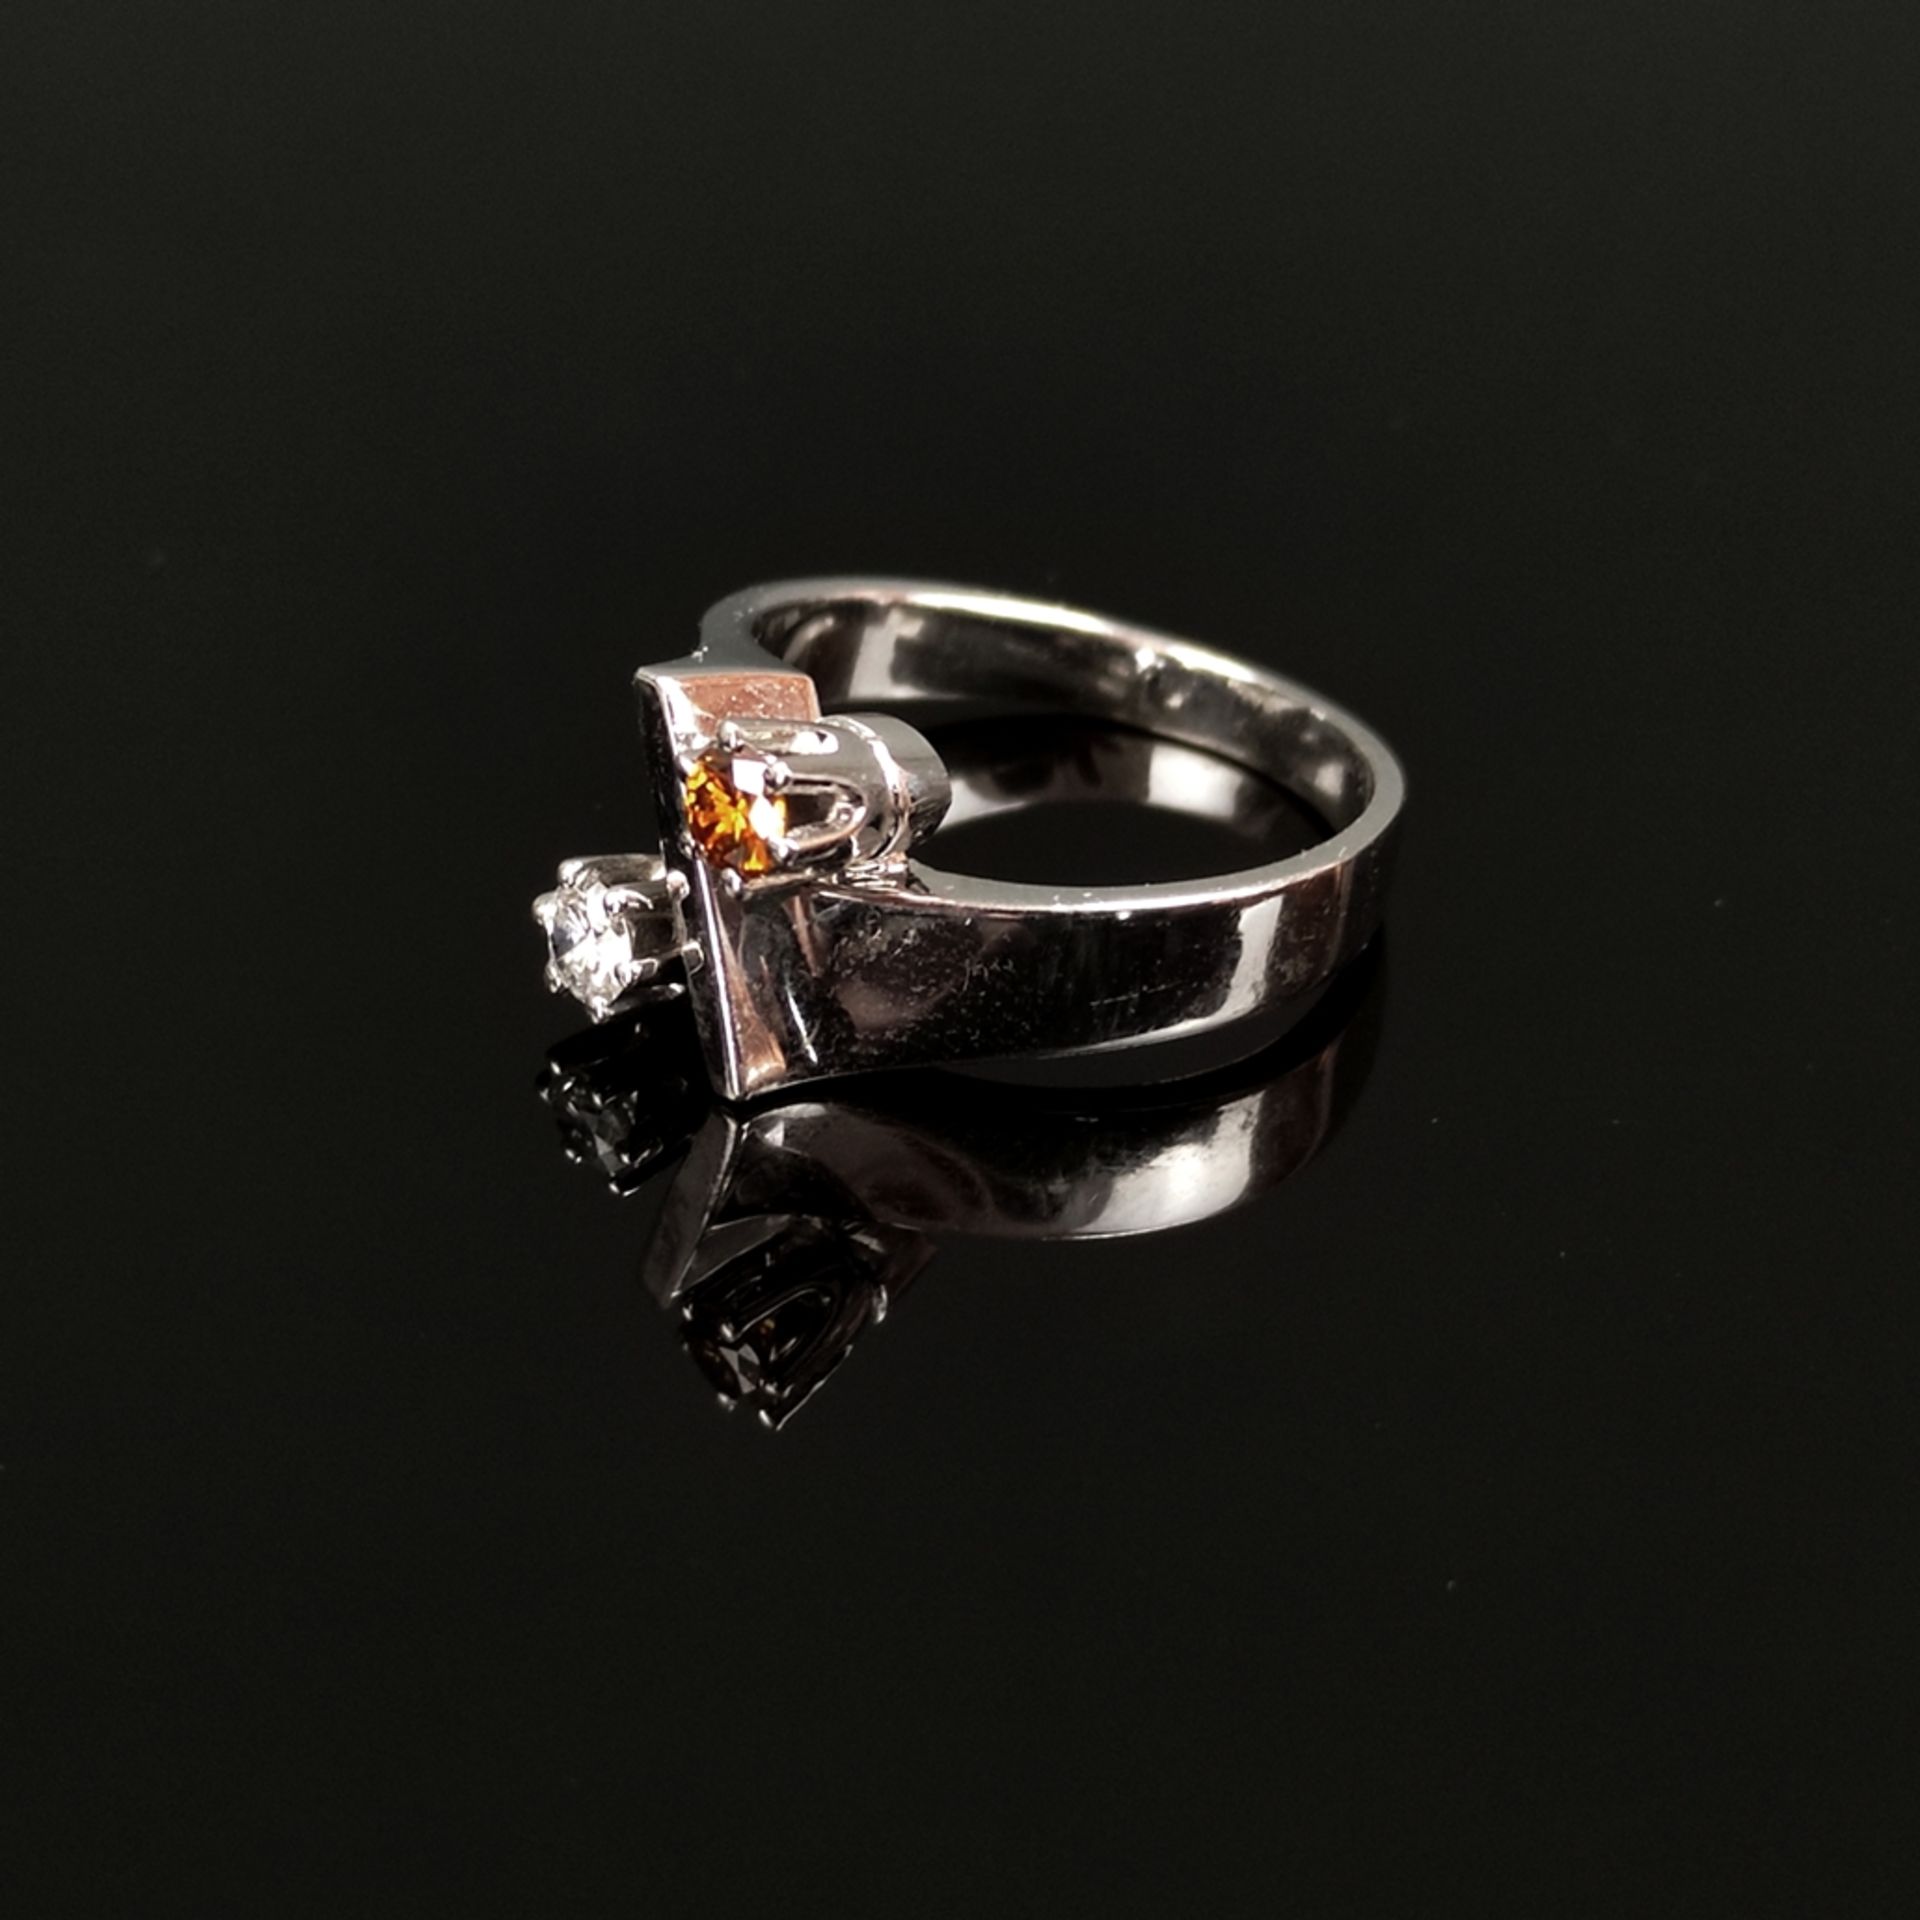 Fancy Diamant Design Ring, 585/14K Weißgold (punziert), 5,43g, Vorderseite mit zwei Brillanten, ein